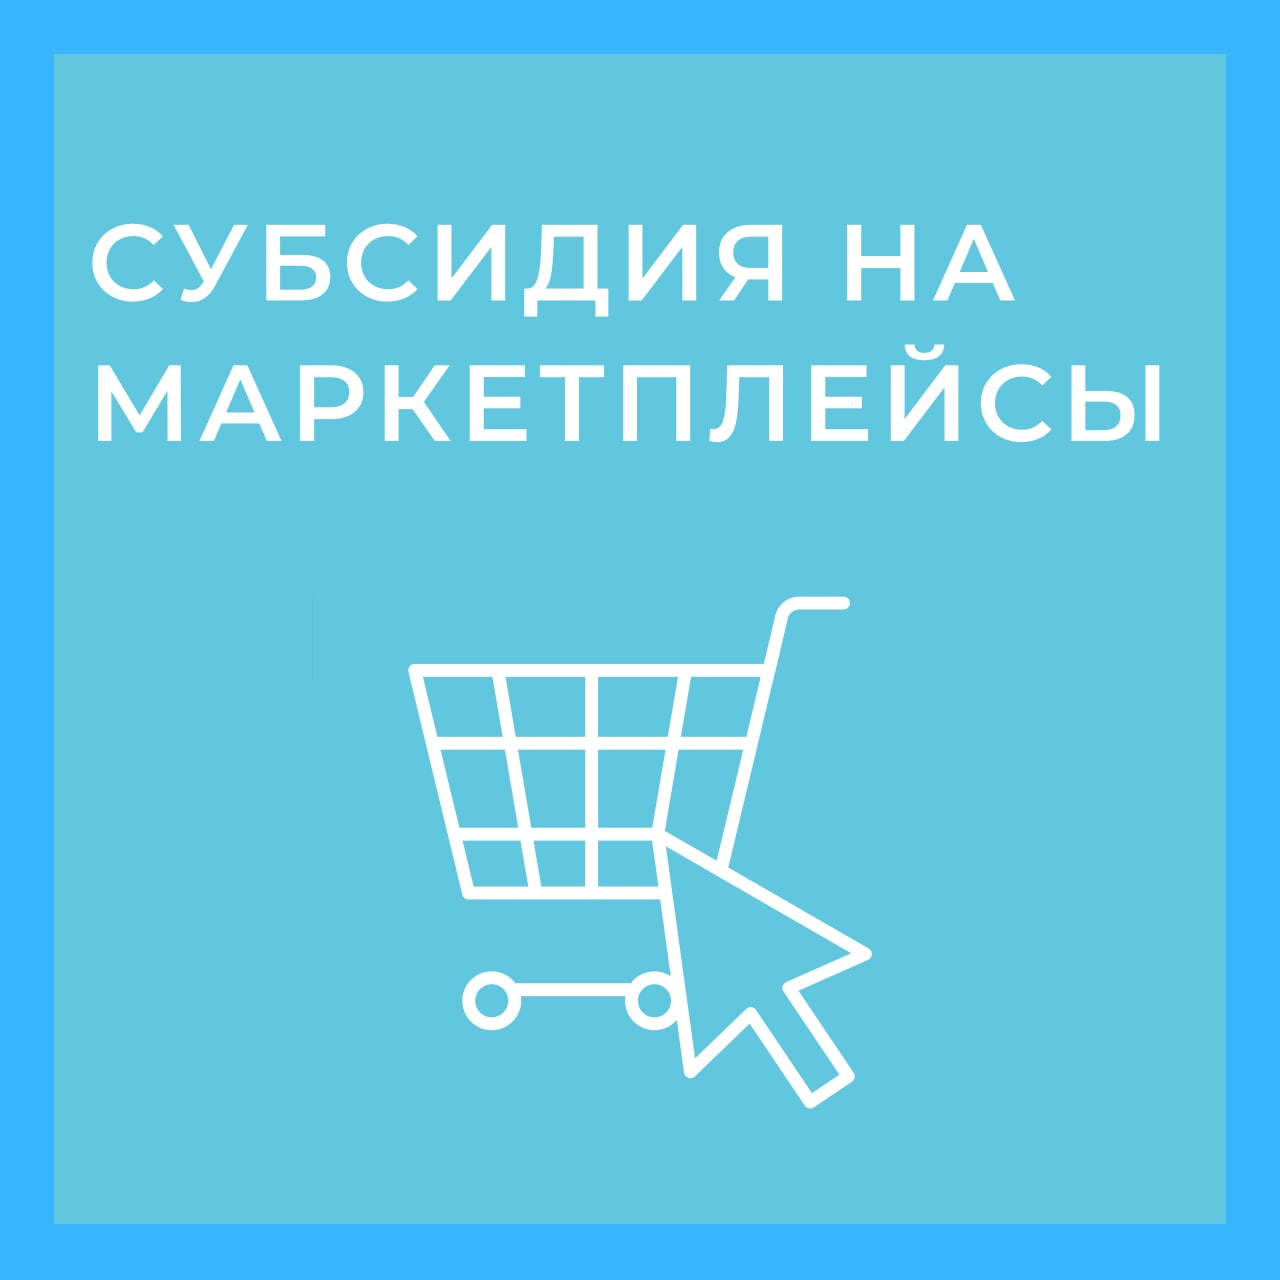 В Московской области продолжается прием заявок на получение субсидии на маркетплейсы